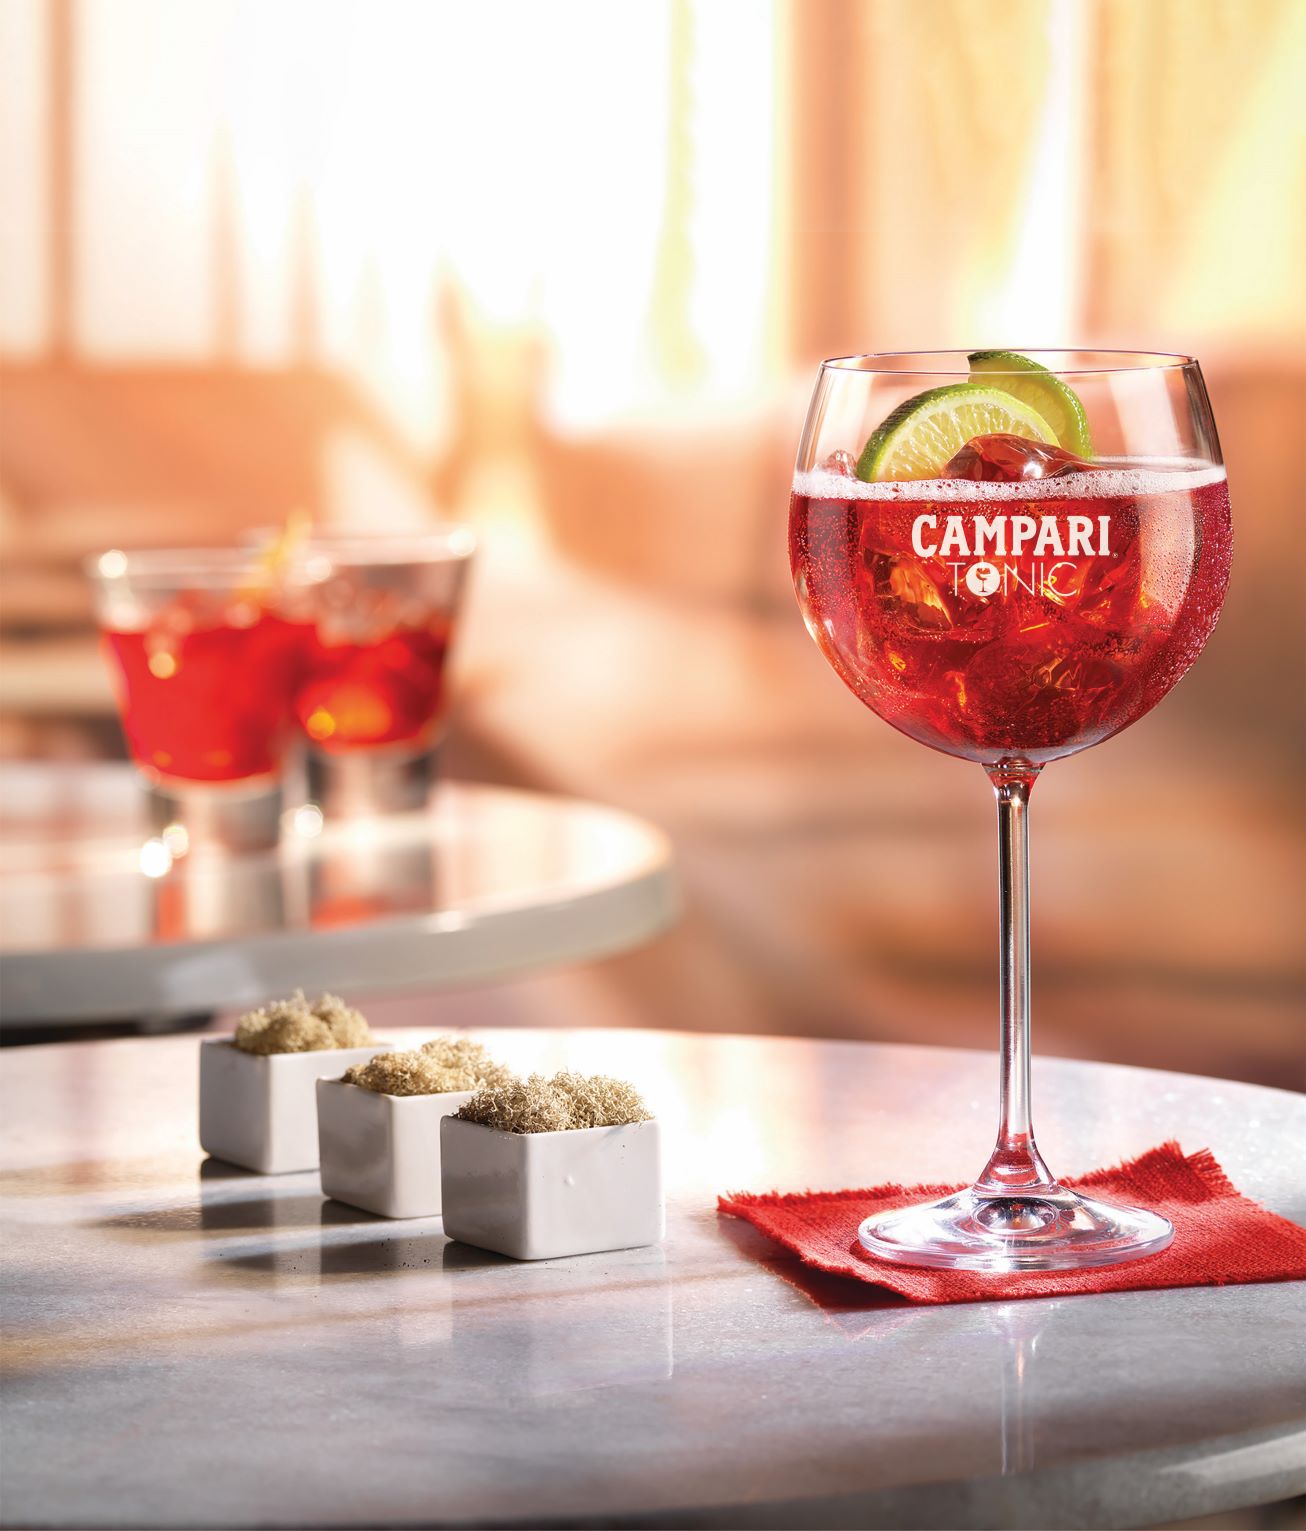 Campari & Tonic, combinación versátil y refrescante para el verano